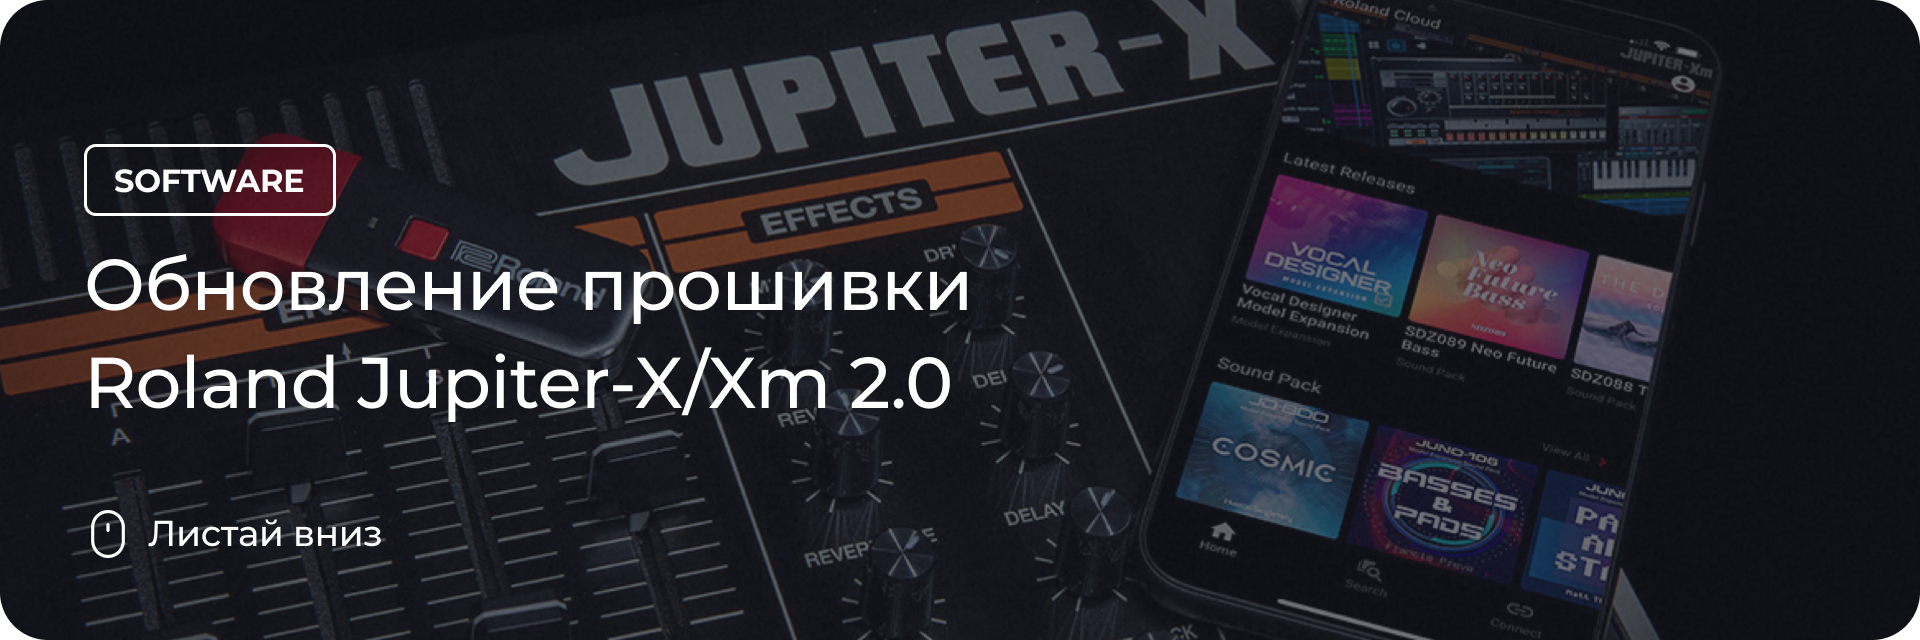 Обновление прошивки Roland Jupiter-X/Xm 2.0